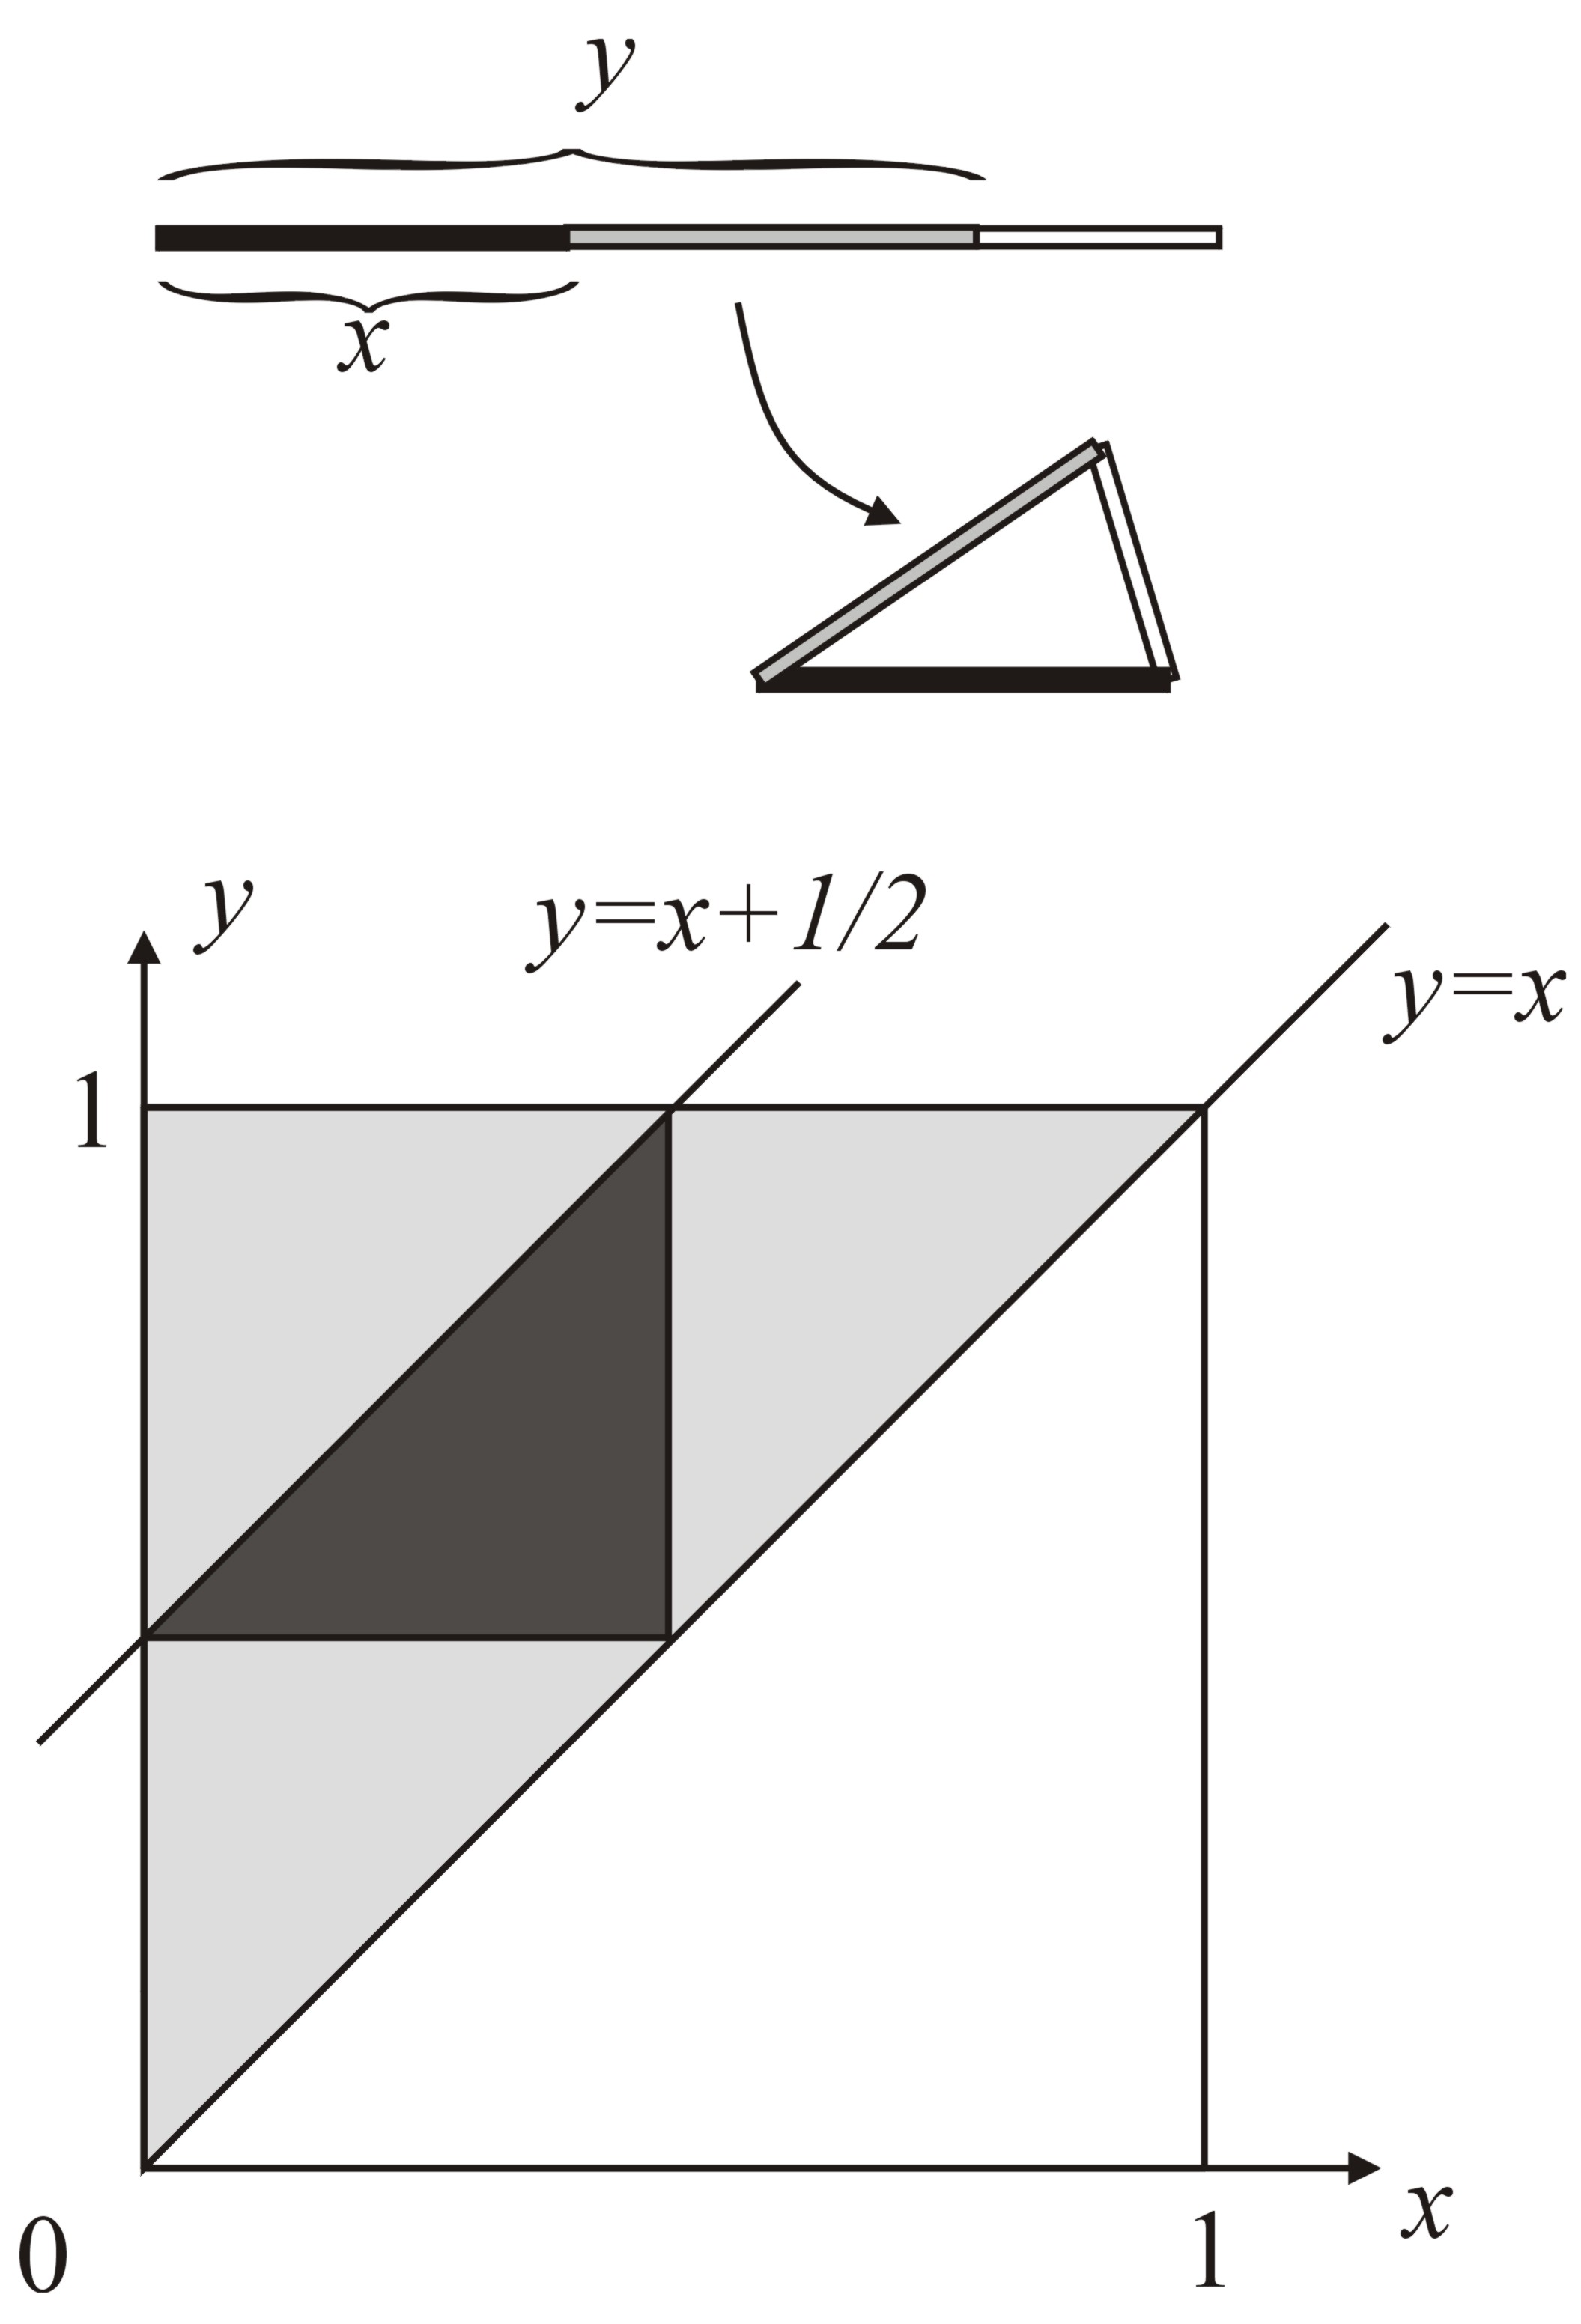 Çubuğun bir ucunu belirleyip kırılma noktalarının bu uçtan uzaklıklarını x ve y ile gösterdiğimizde (x < y) örnek uzay, Kartezyen koordinat sisteminde y = x, x = 0 ve y = 1 doğrularının sınırladığı